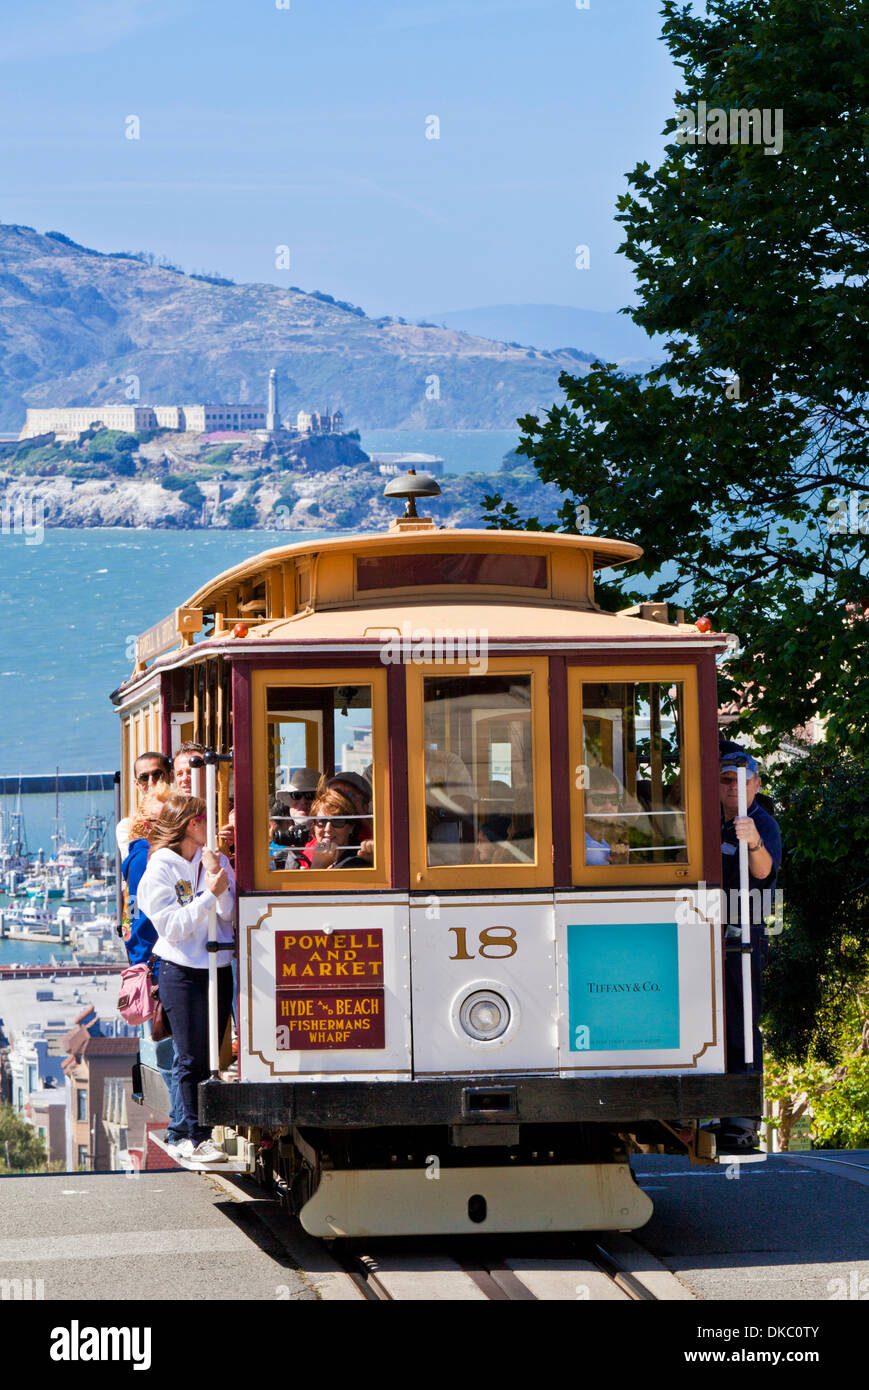 San Francisco Cable cars mit Alcatraz-Insel in der Bucht hinter Kalifornien USA Vereinigte Staaten von Amerika Stockfoto